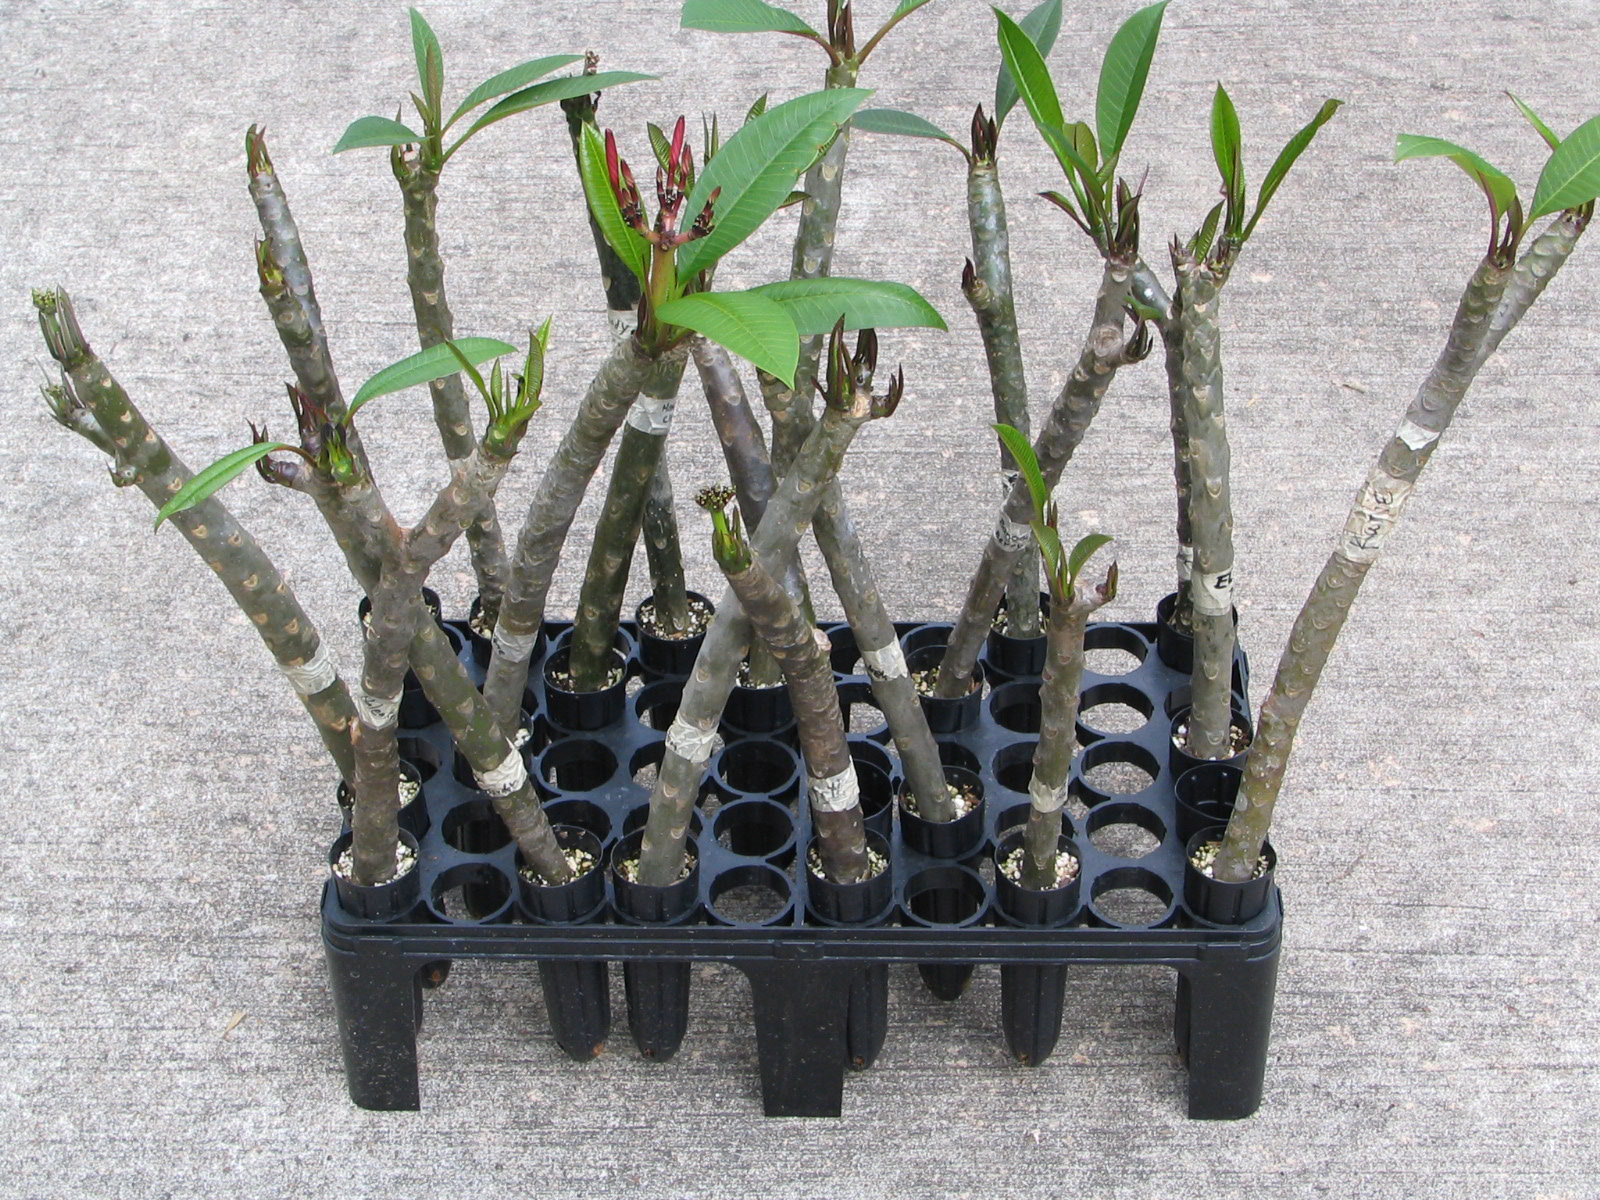 Rooting tubes | Plumeria care, Plumeria tree, Plumeria flowers 